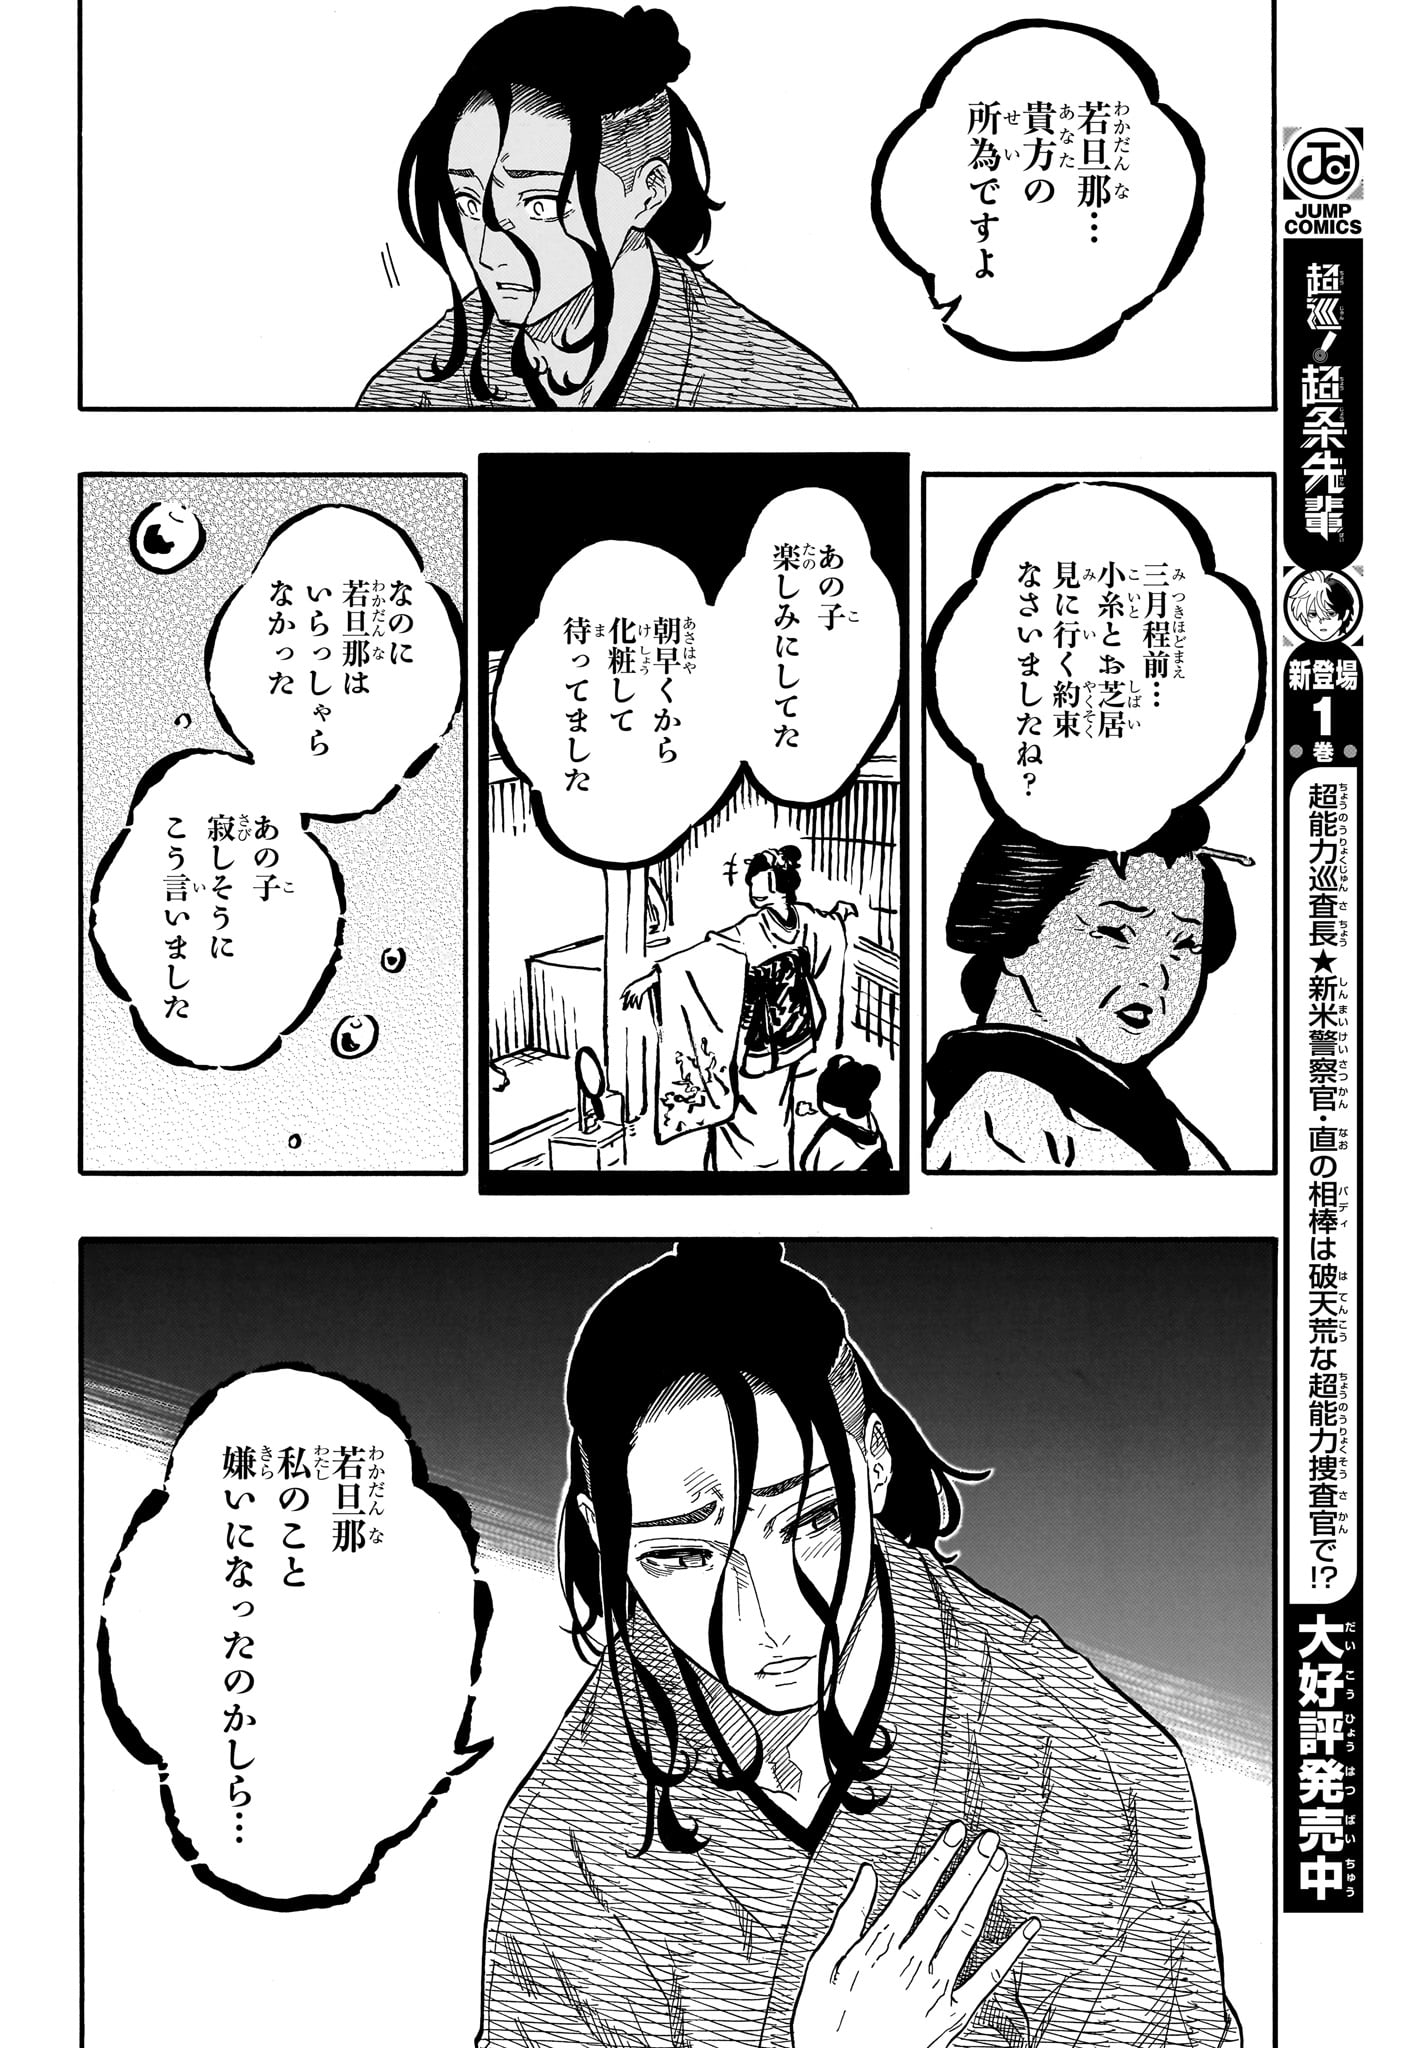 Akane-Banashi - Chapter 114 - Page 10